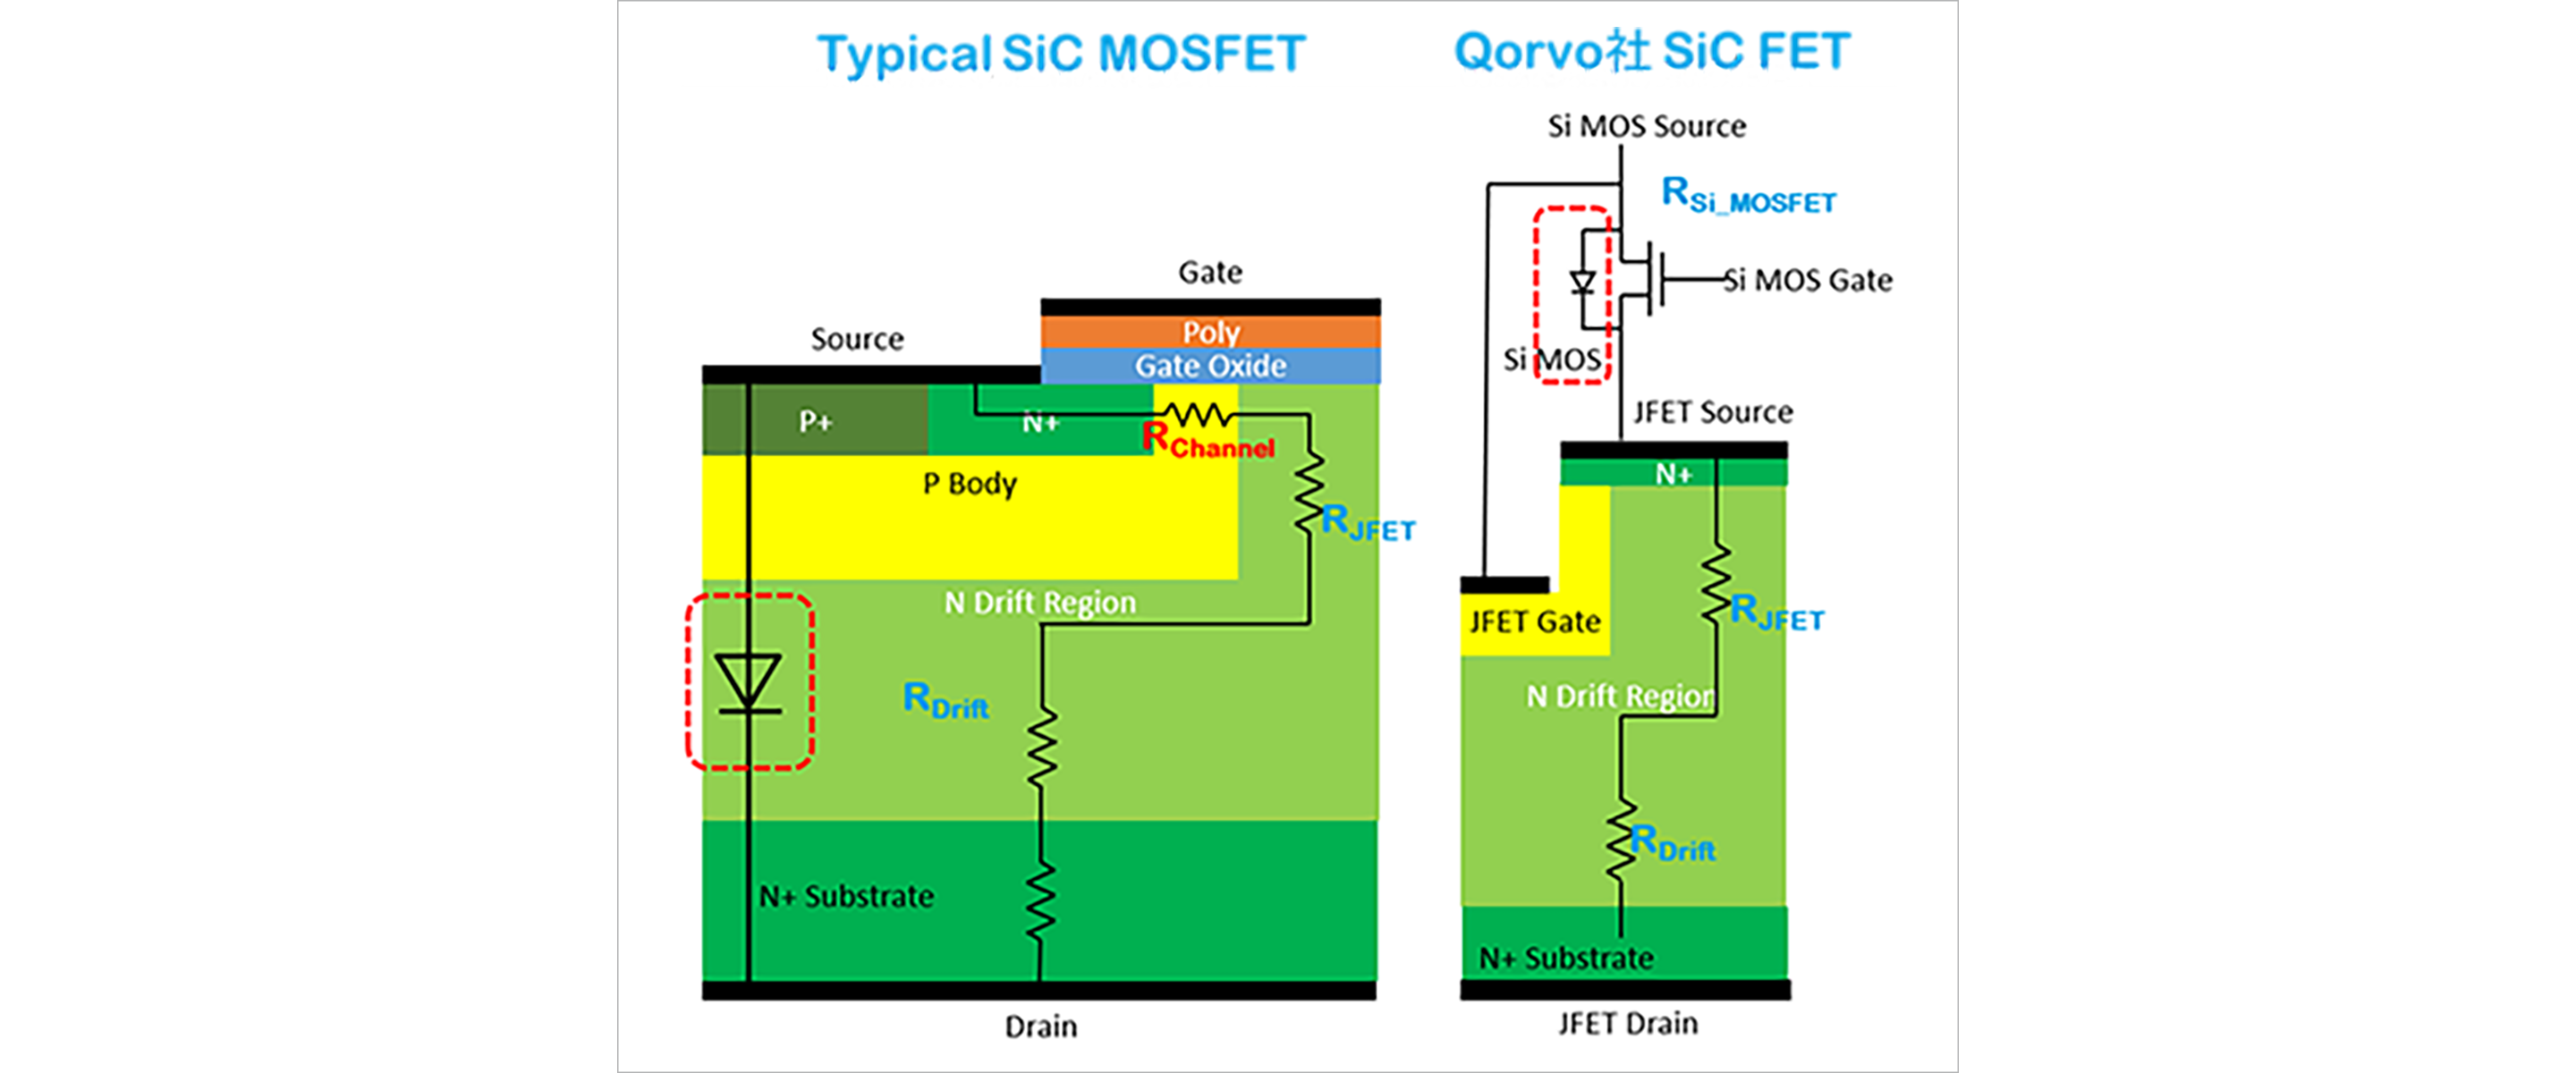 図1：一般的なSiCMOSFETおよびQorvo社 SiC FETの概略断面図